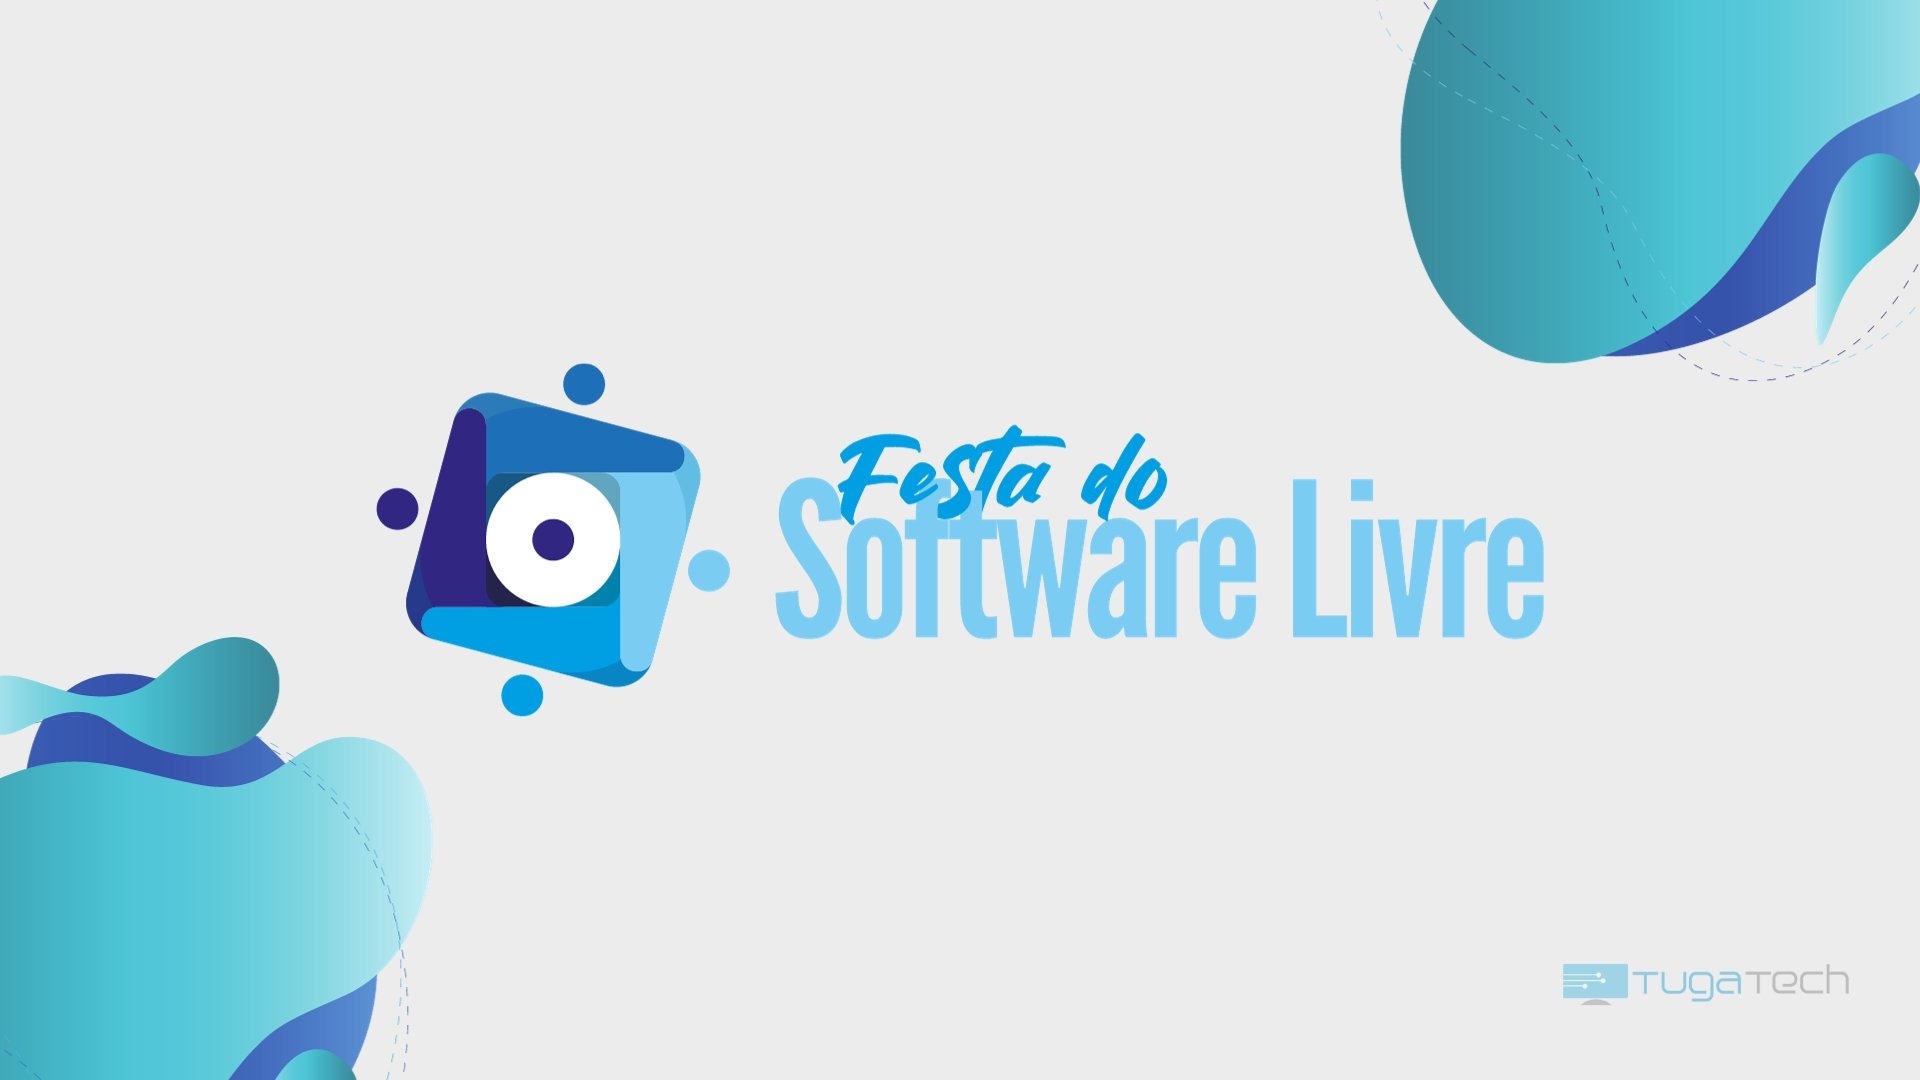 Festa do Software Livre